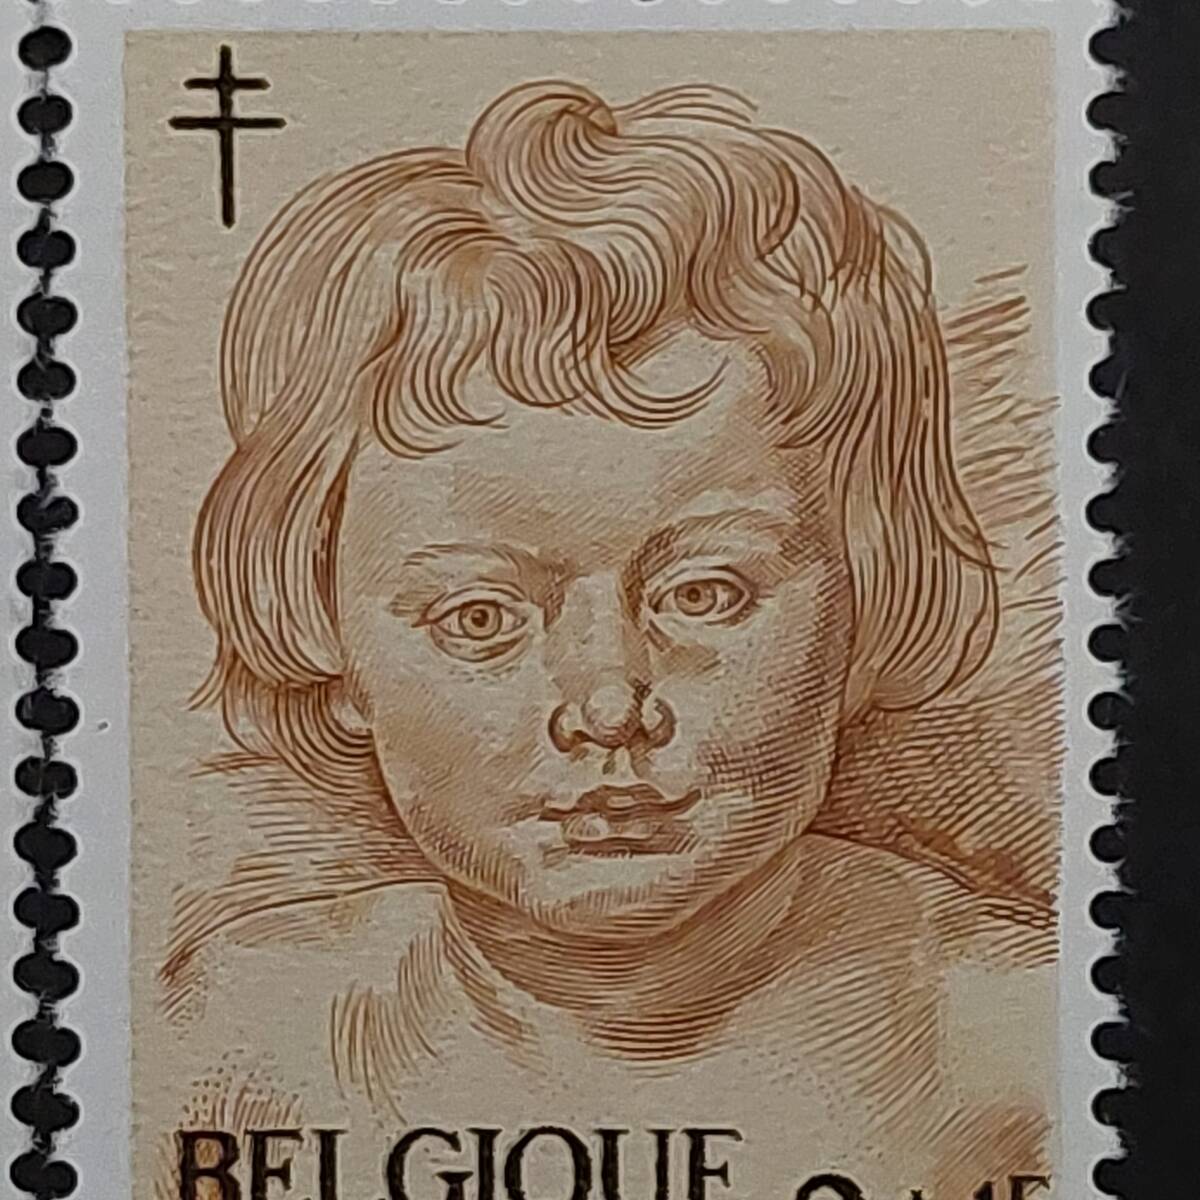 J507 ベルギー切手「バロック期のフランドルの画家『ルーベンスの子供・天使の絵画切手』(結核予防寄付金付き)6種完」1963年発行 未使用の画像6